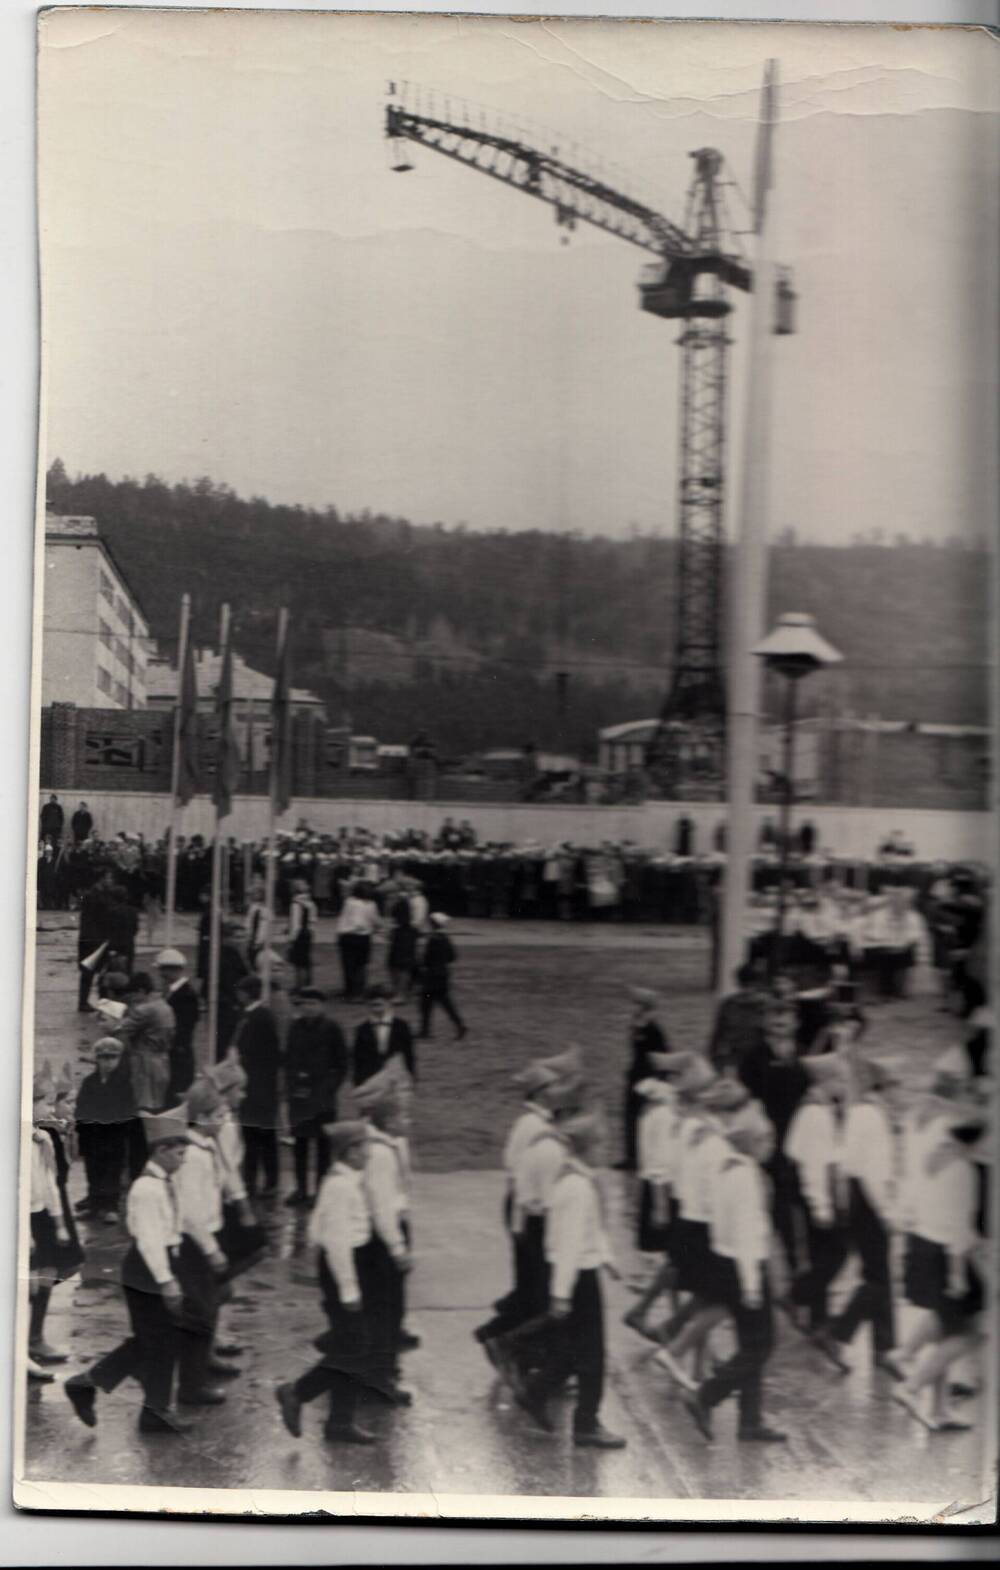 Фото: Городской праздник
пионерии 19 мая 1966 г.
черно-белое